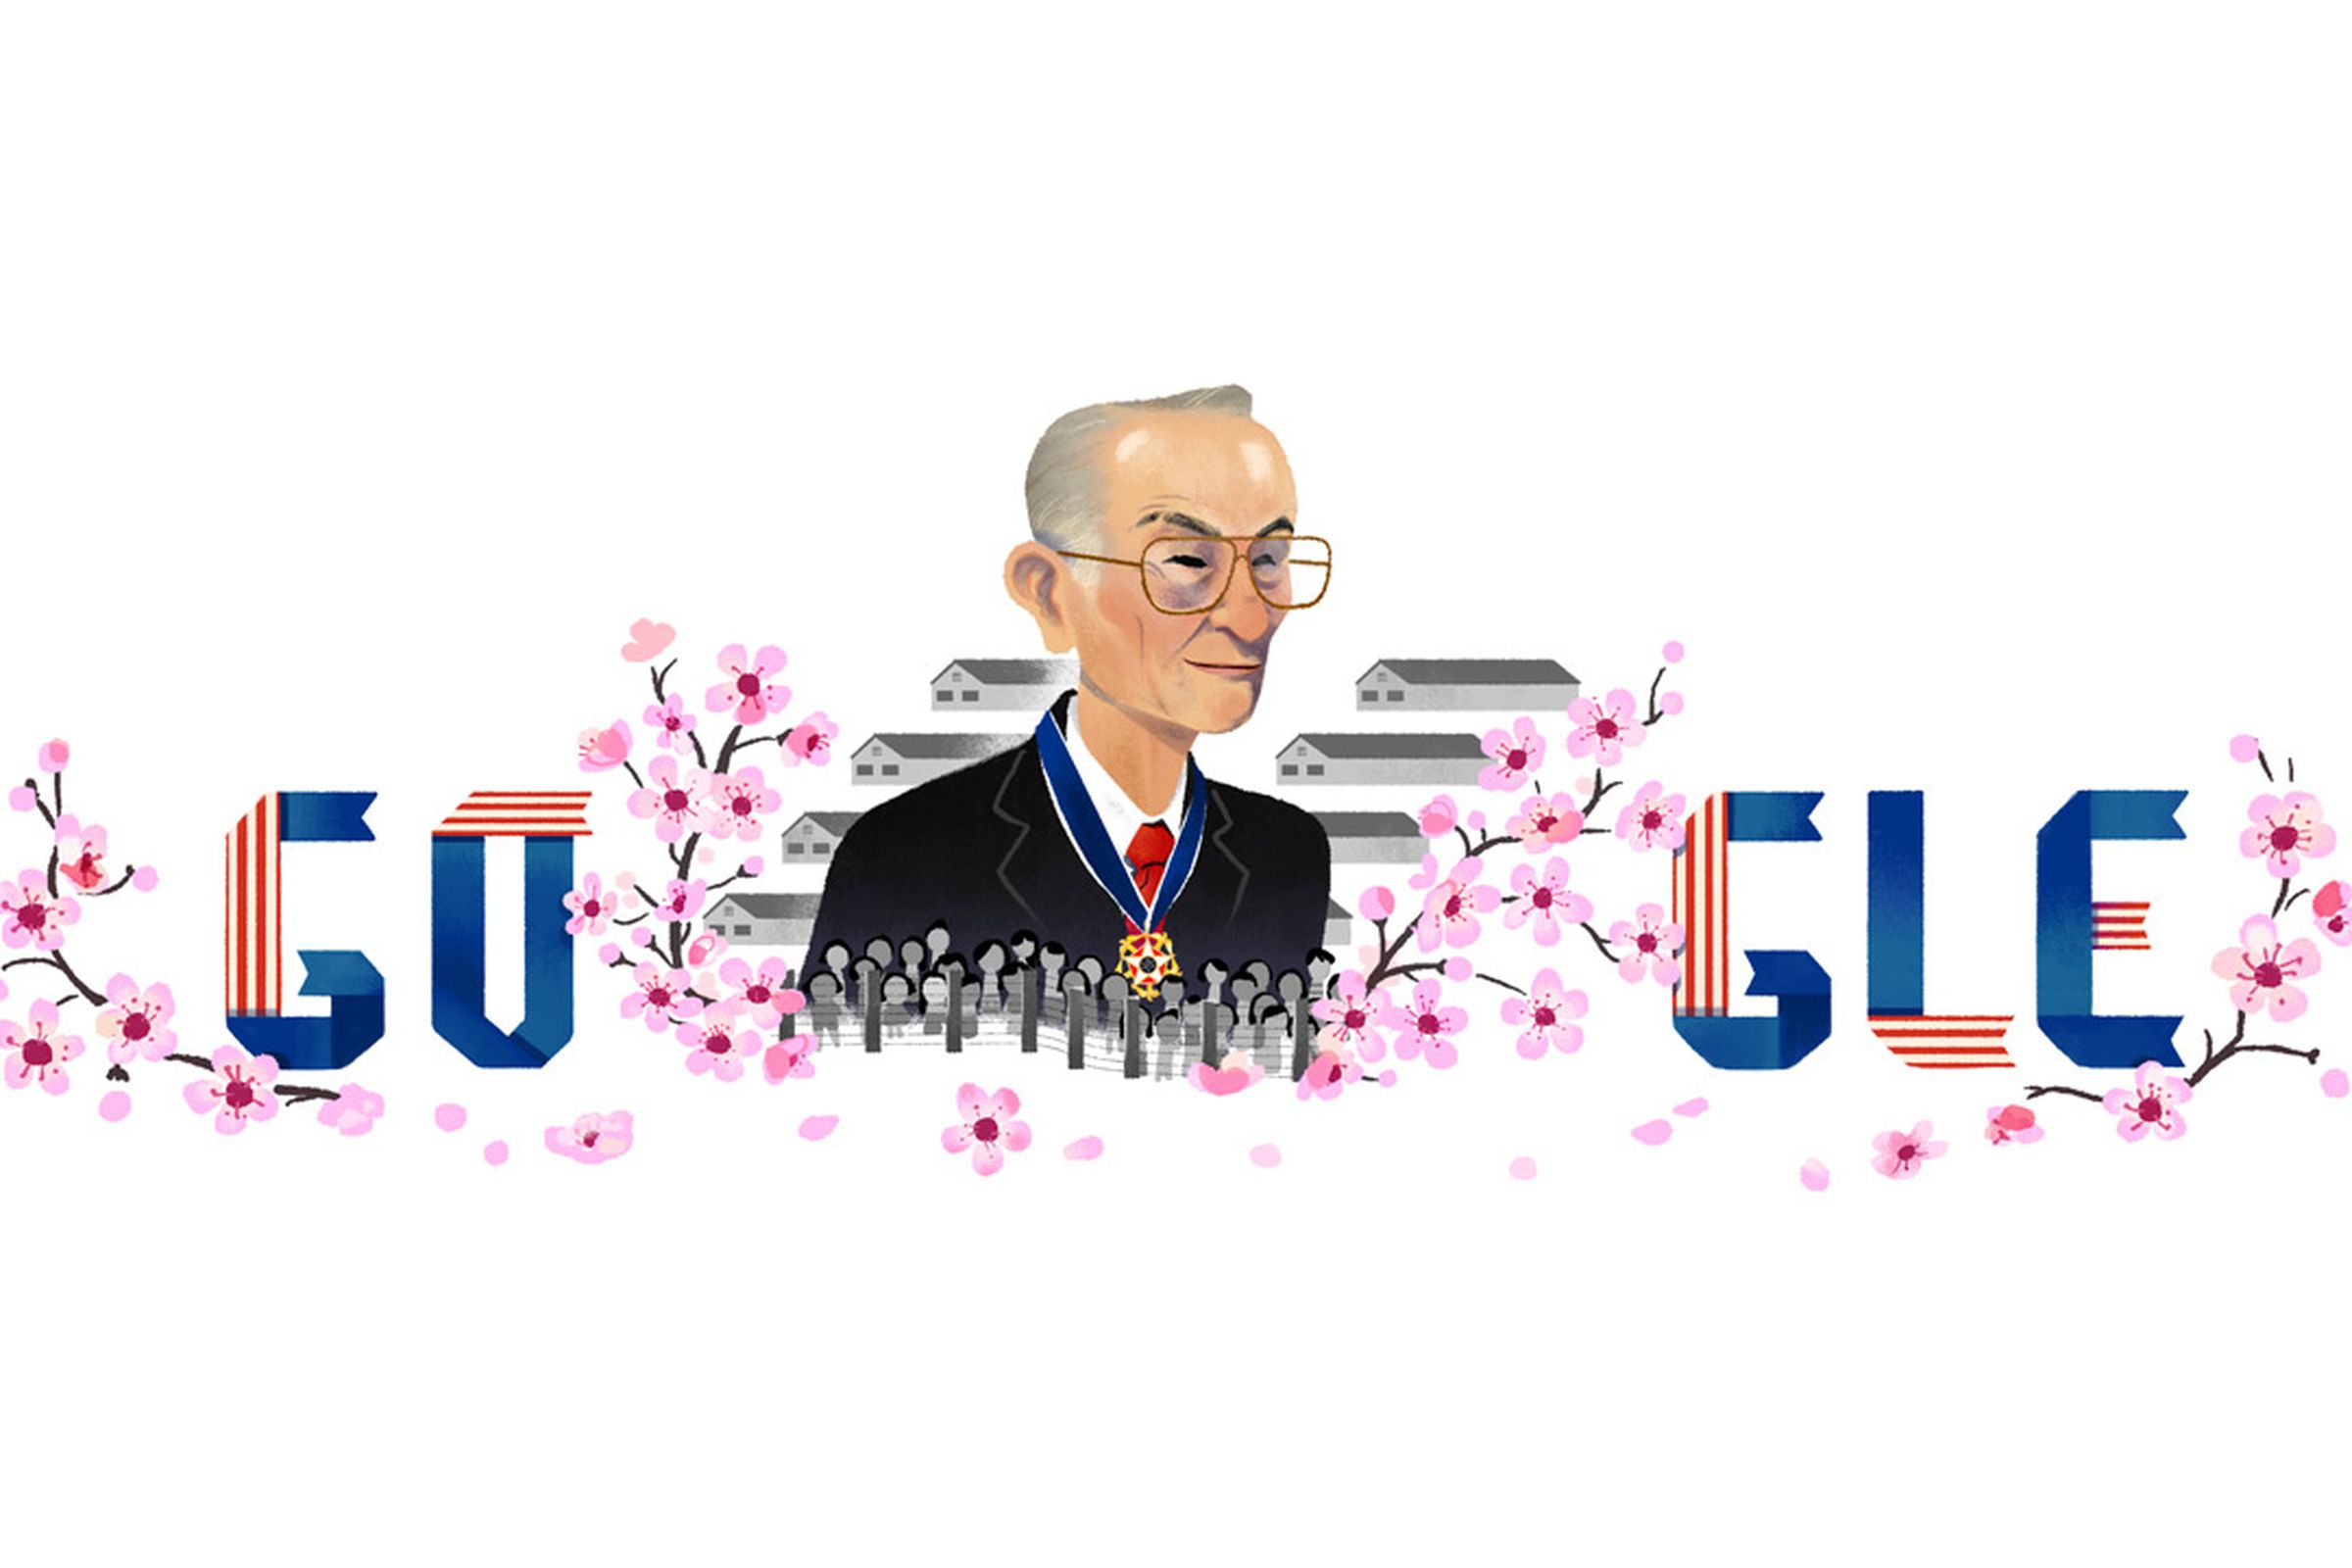 Google Doodle depicting Fred Korematsu